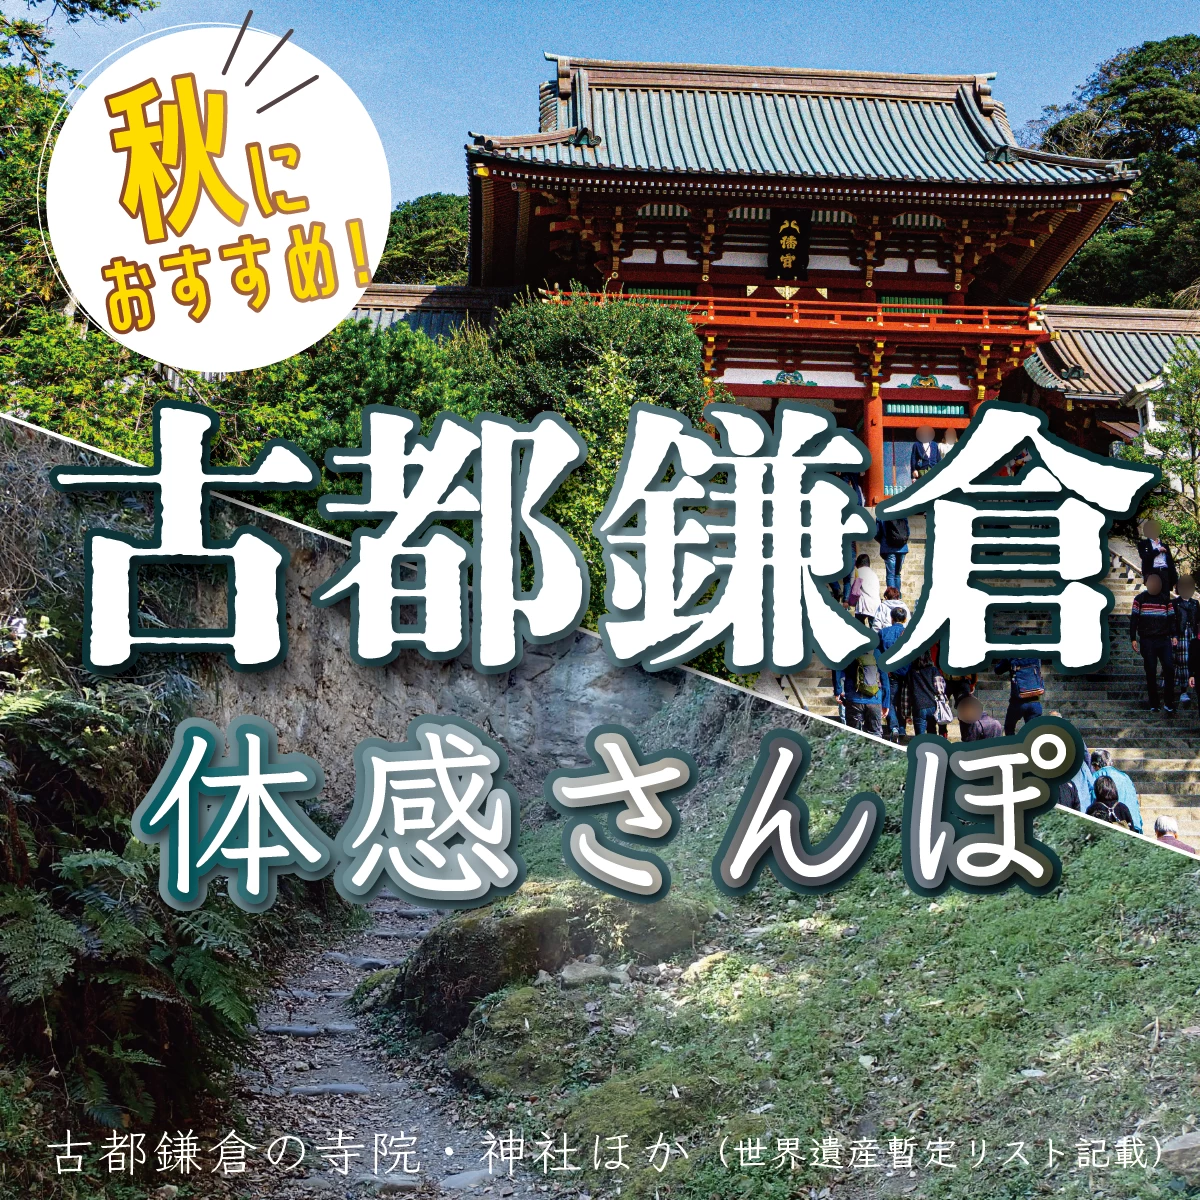 鎌倉で歴史散歩。 鶴岡八幡宮や円覚寺も巡る日帰り旅行